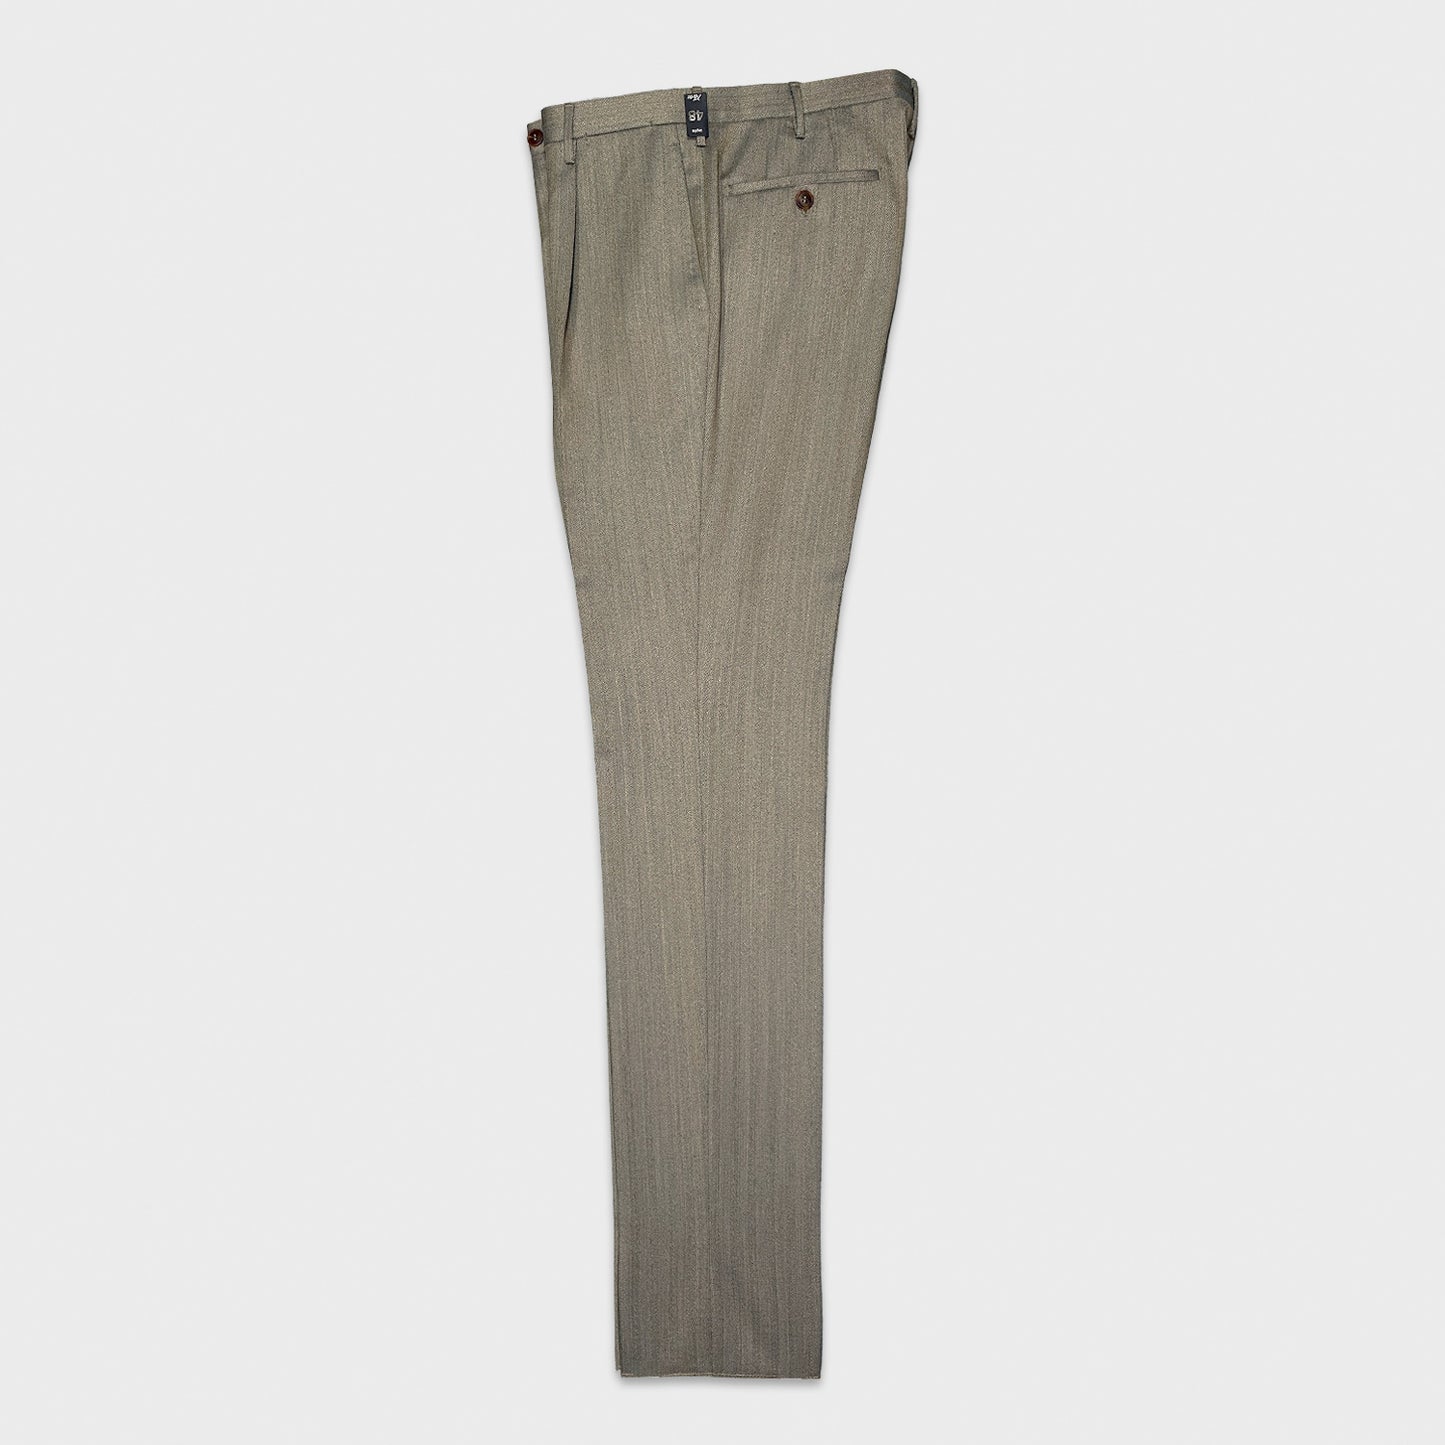 Load image into Gallery viewer, Rota Solaro Wool Trousers Herringbone Sandstone Beige
